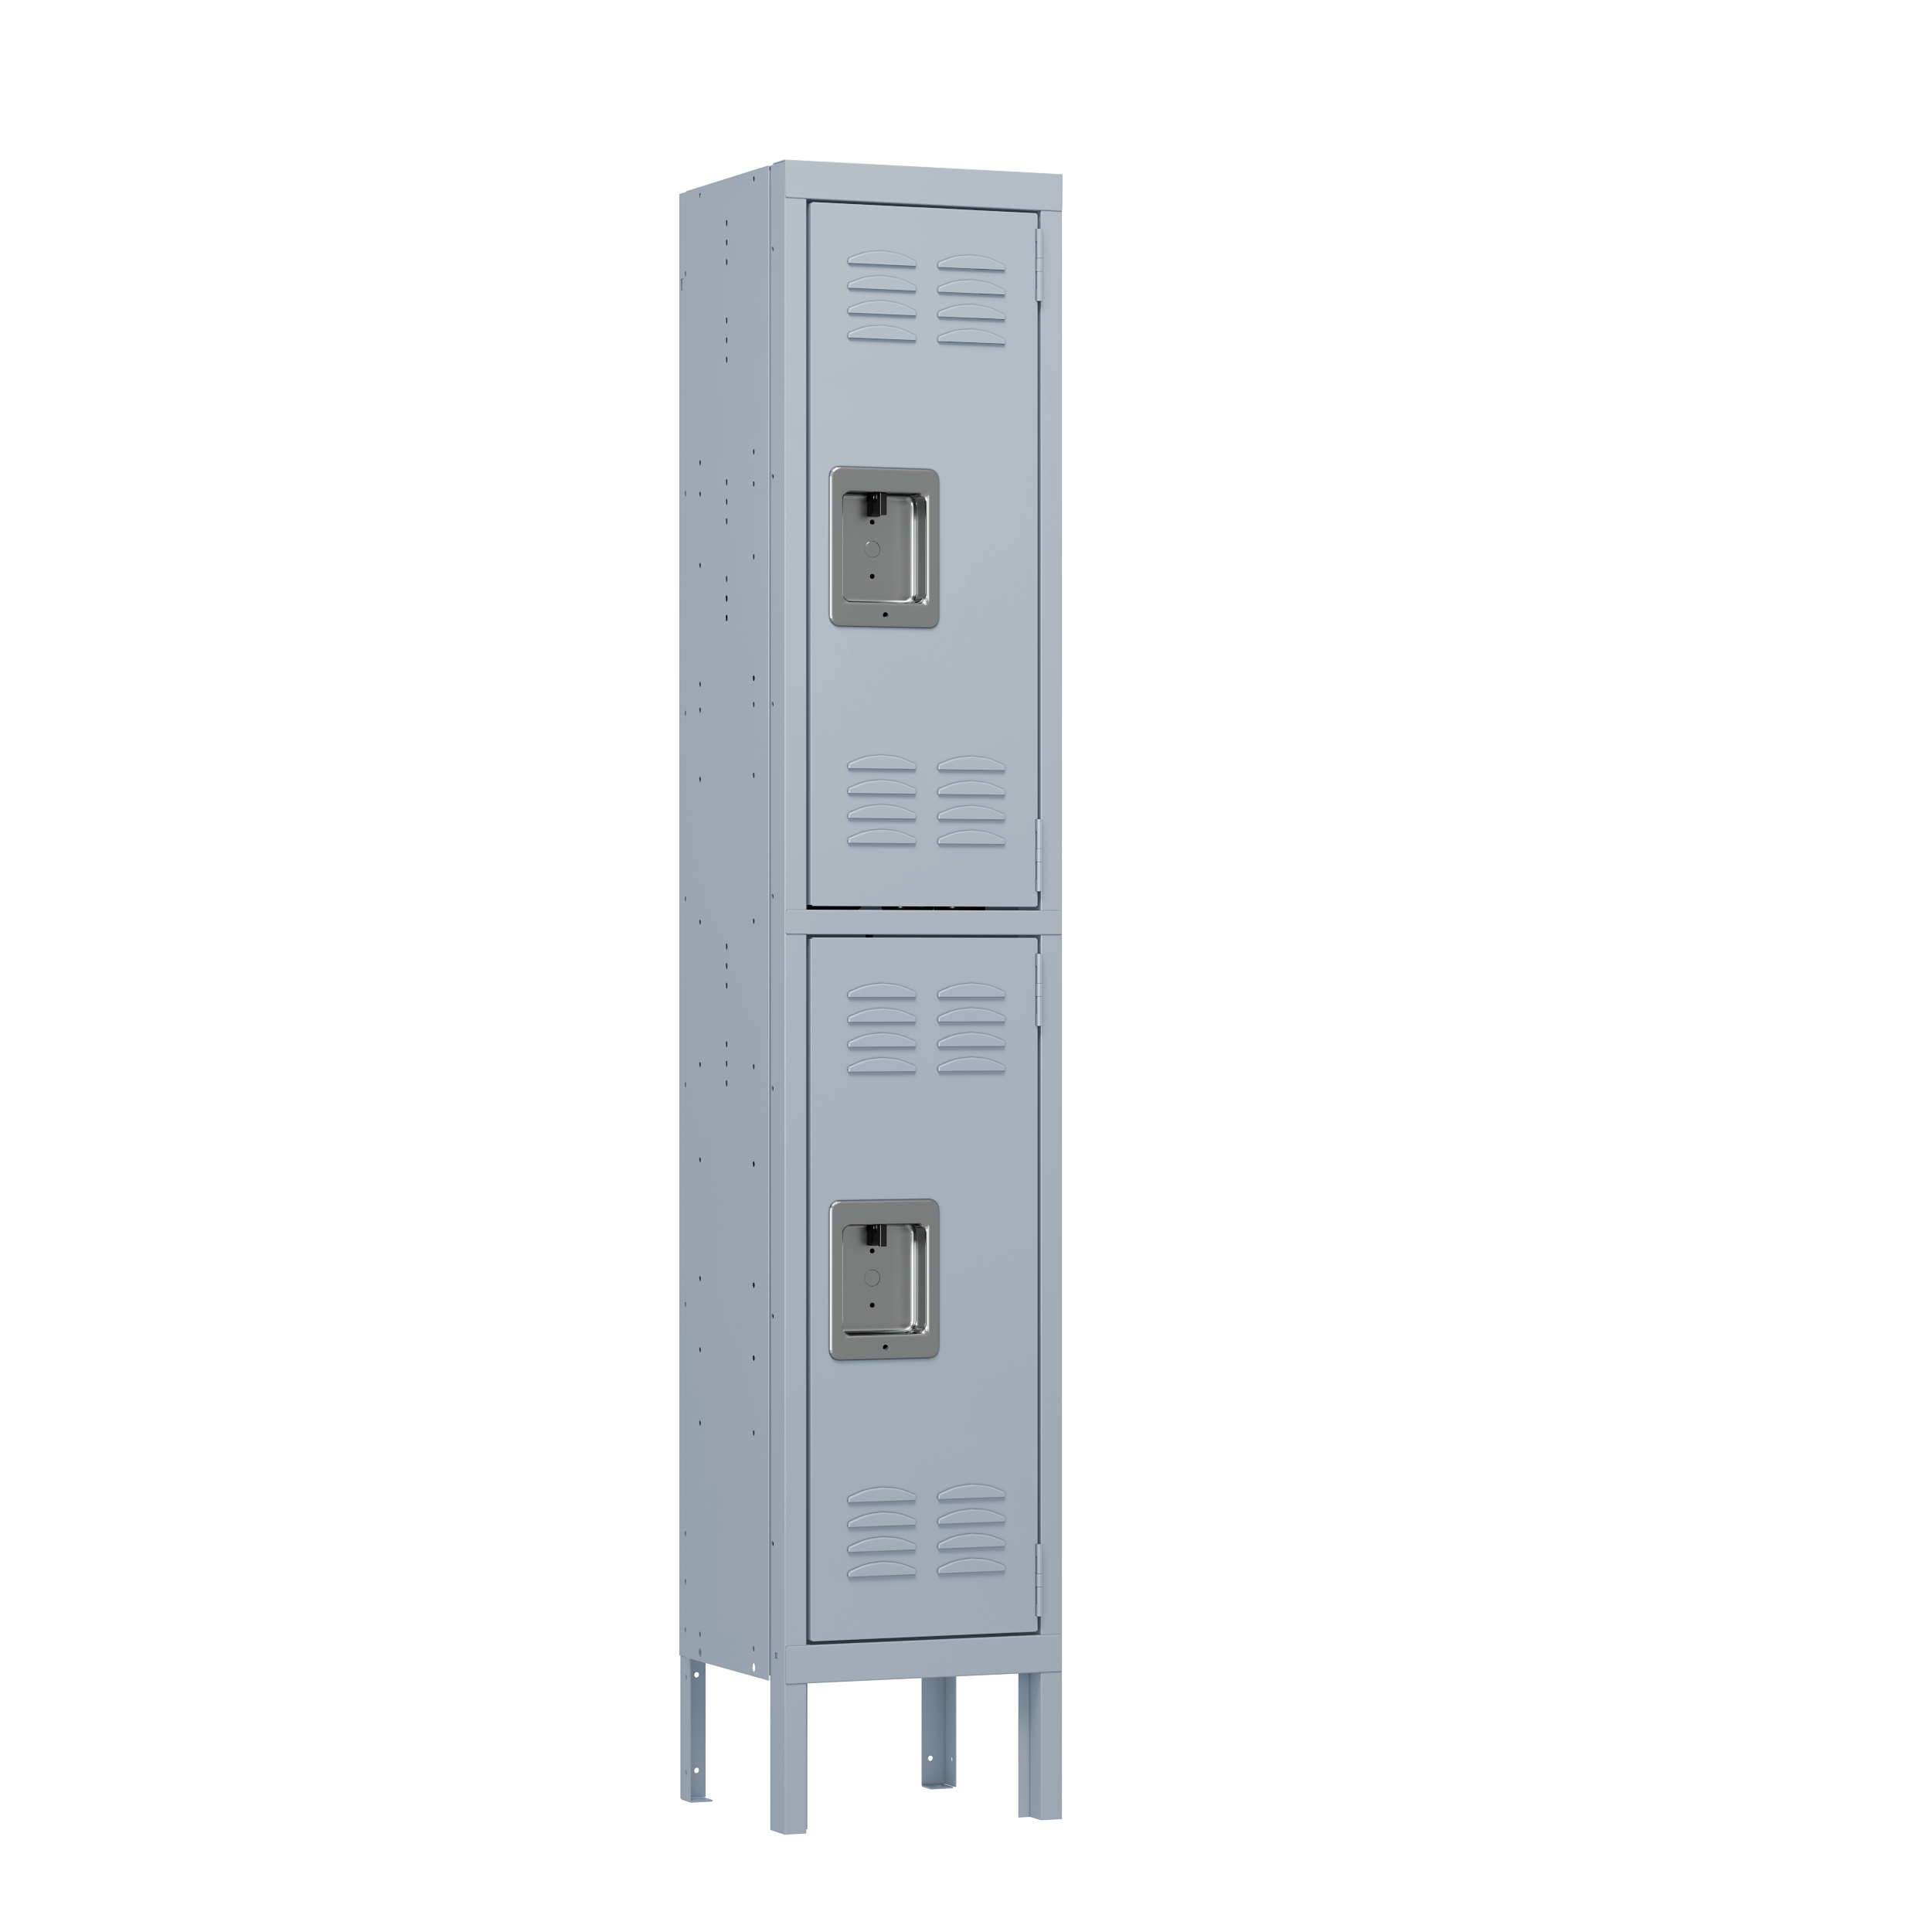 Two door single metal locker